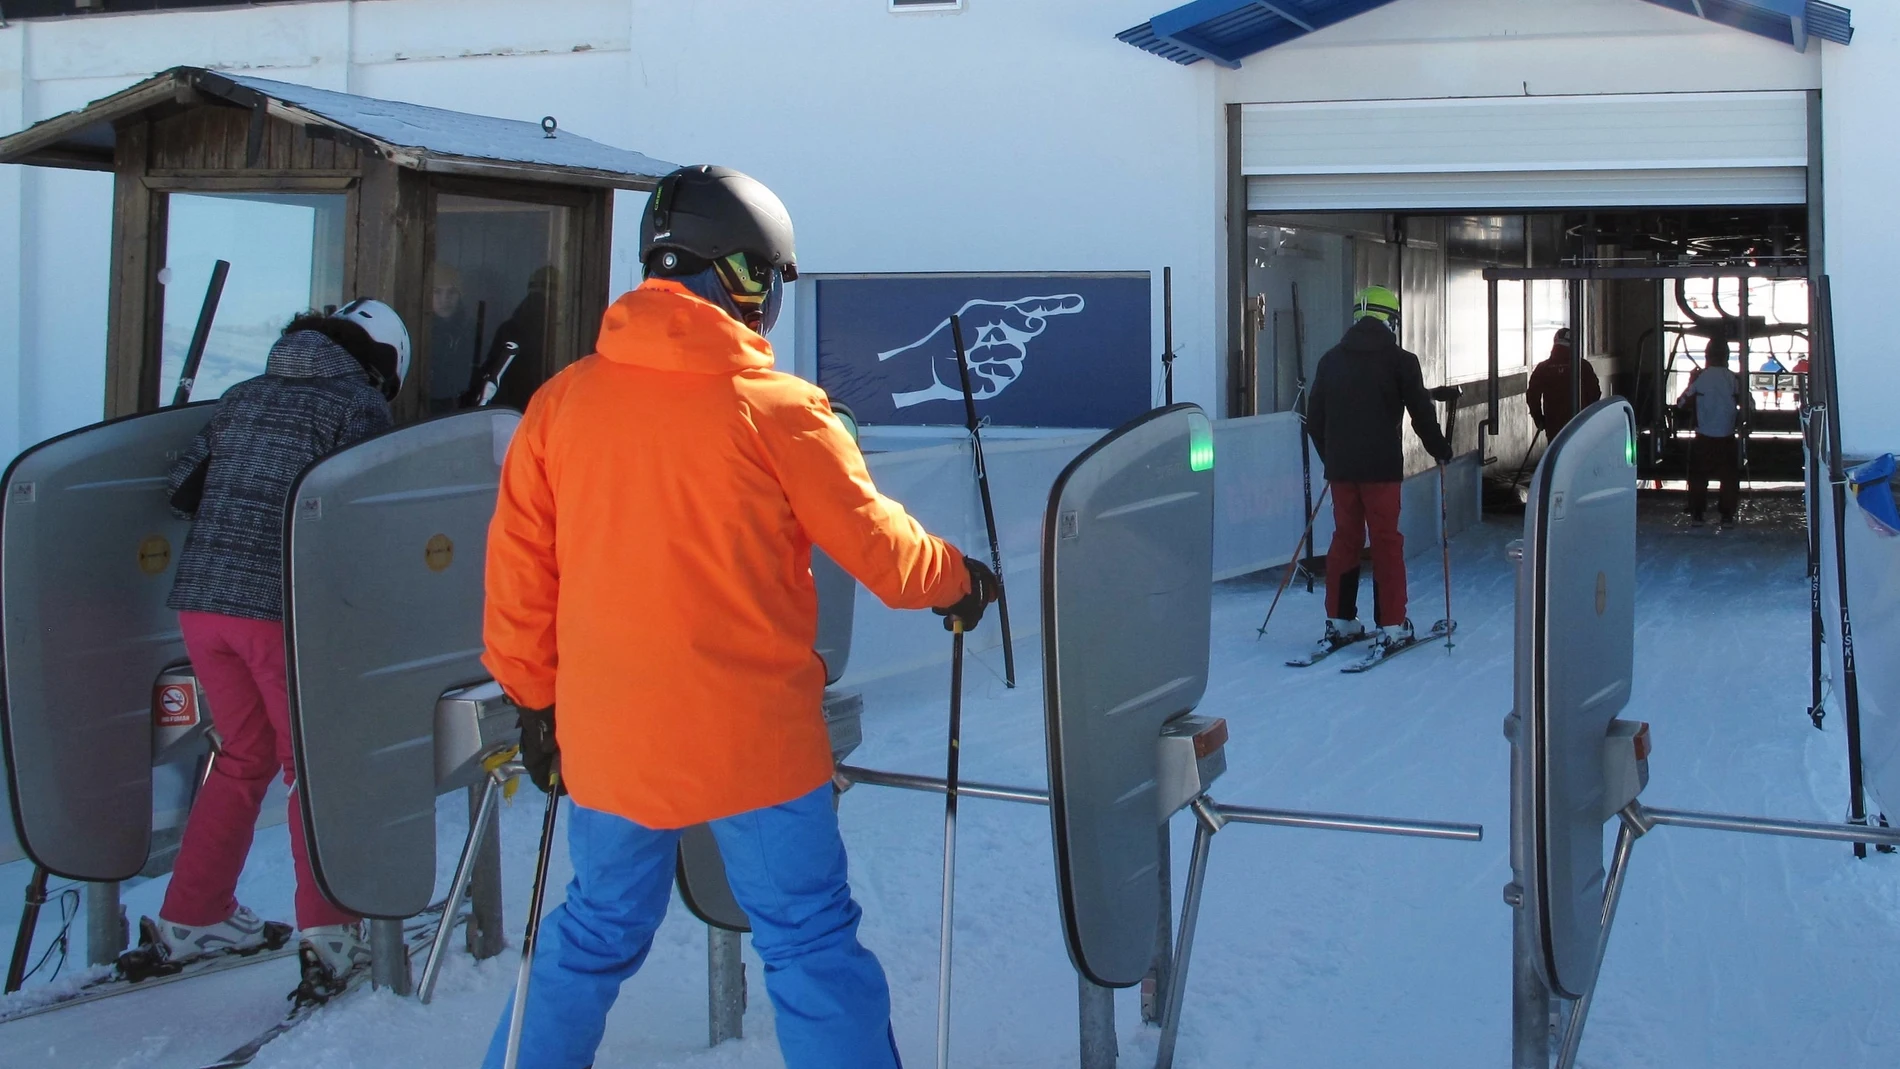 La entrada de una estación de esquí.